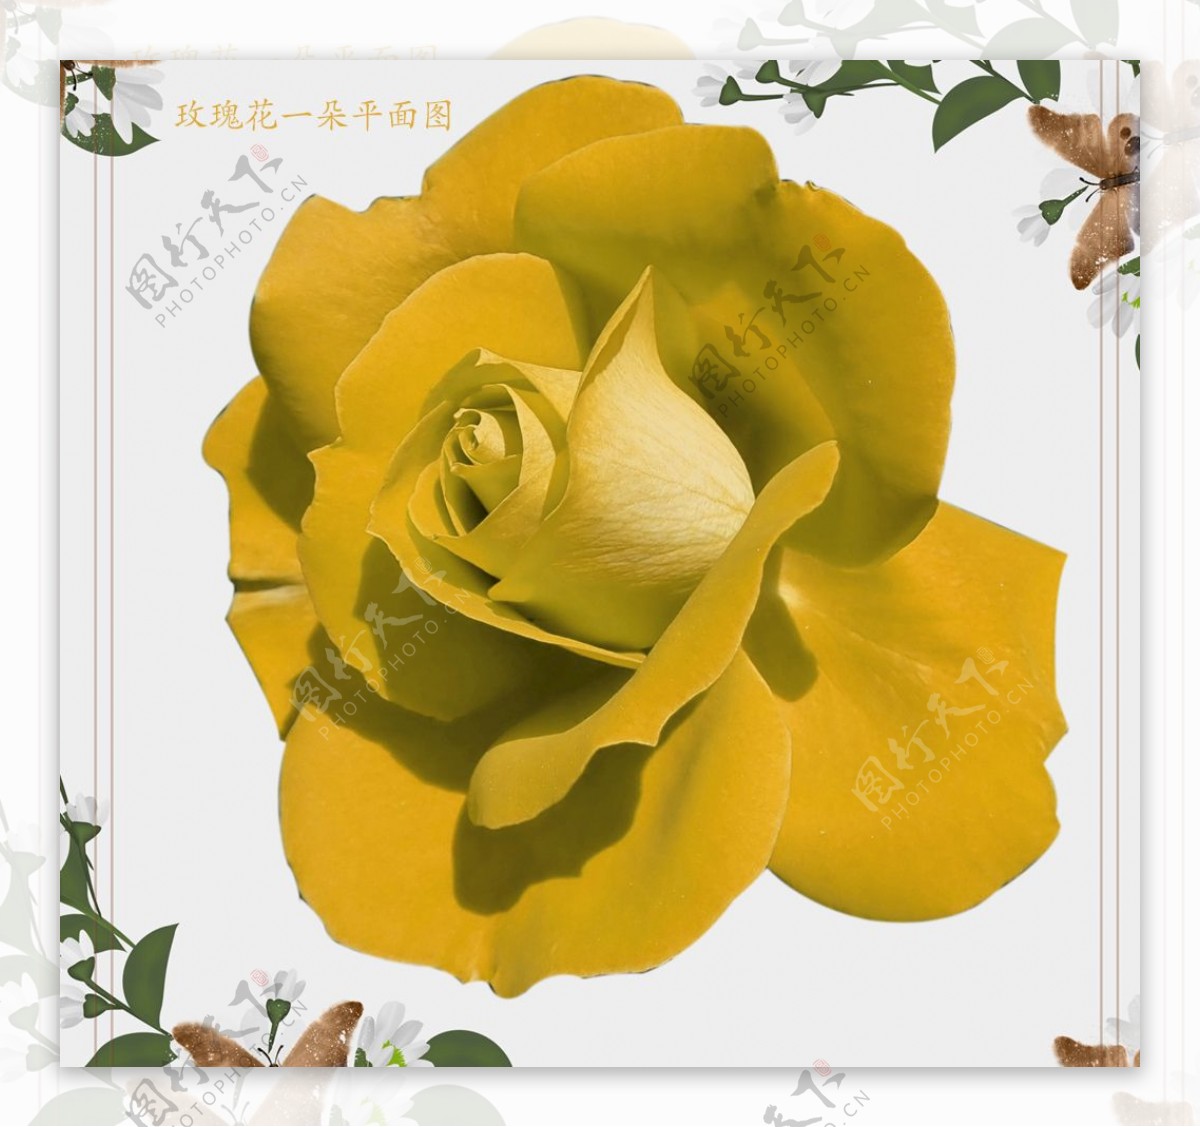 一朵黄玫瑰花朵图片素材